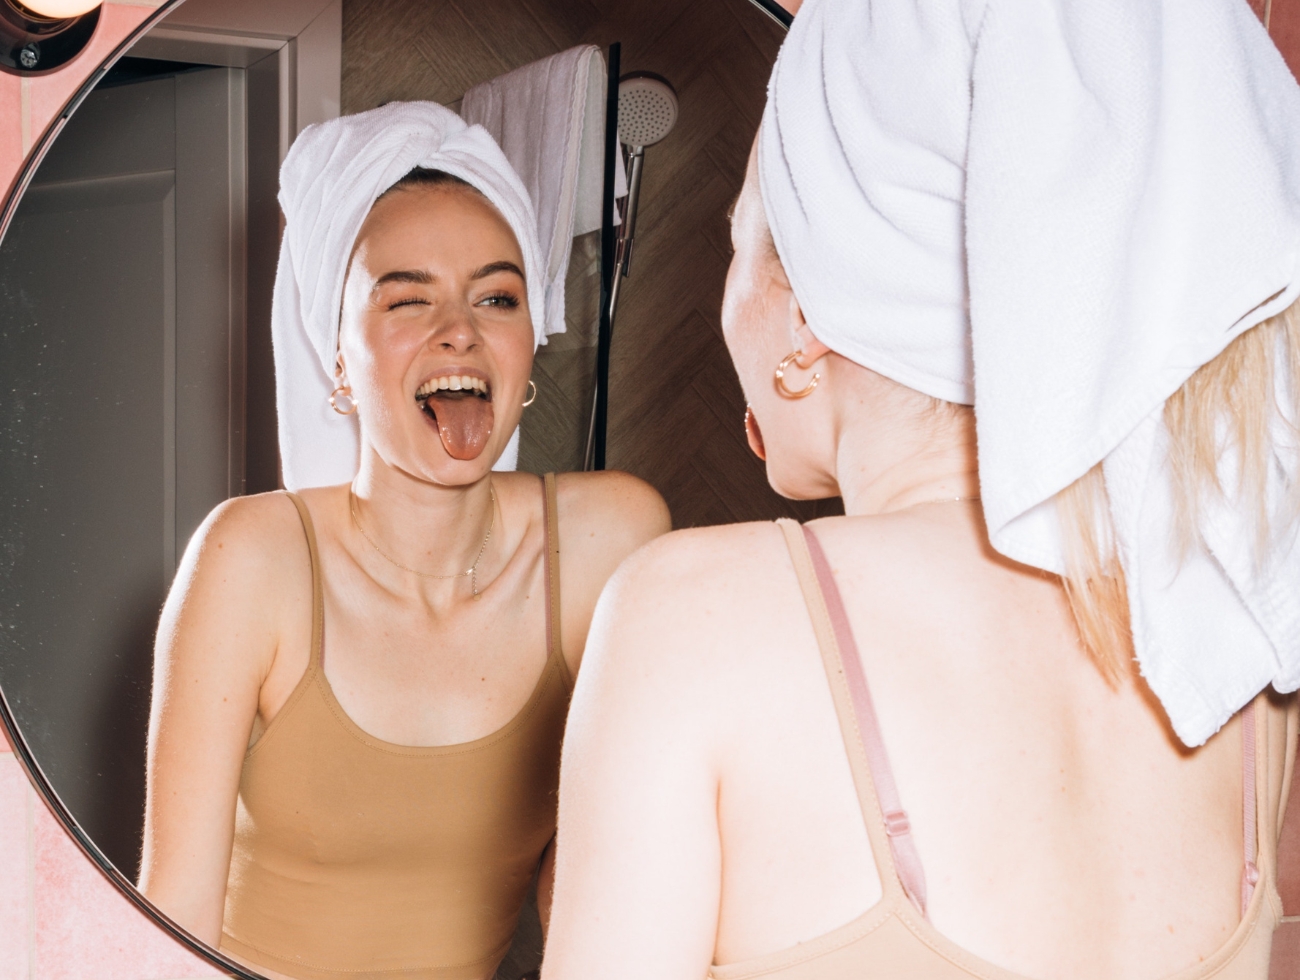 Eine junge blonde Frau zeigt ihrem Spiegelbild im Badezimmer die Zunge.